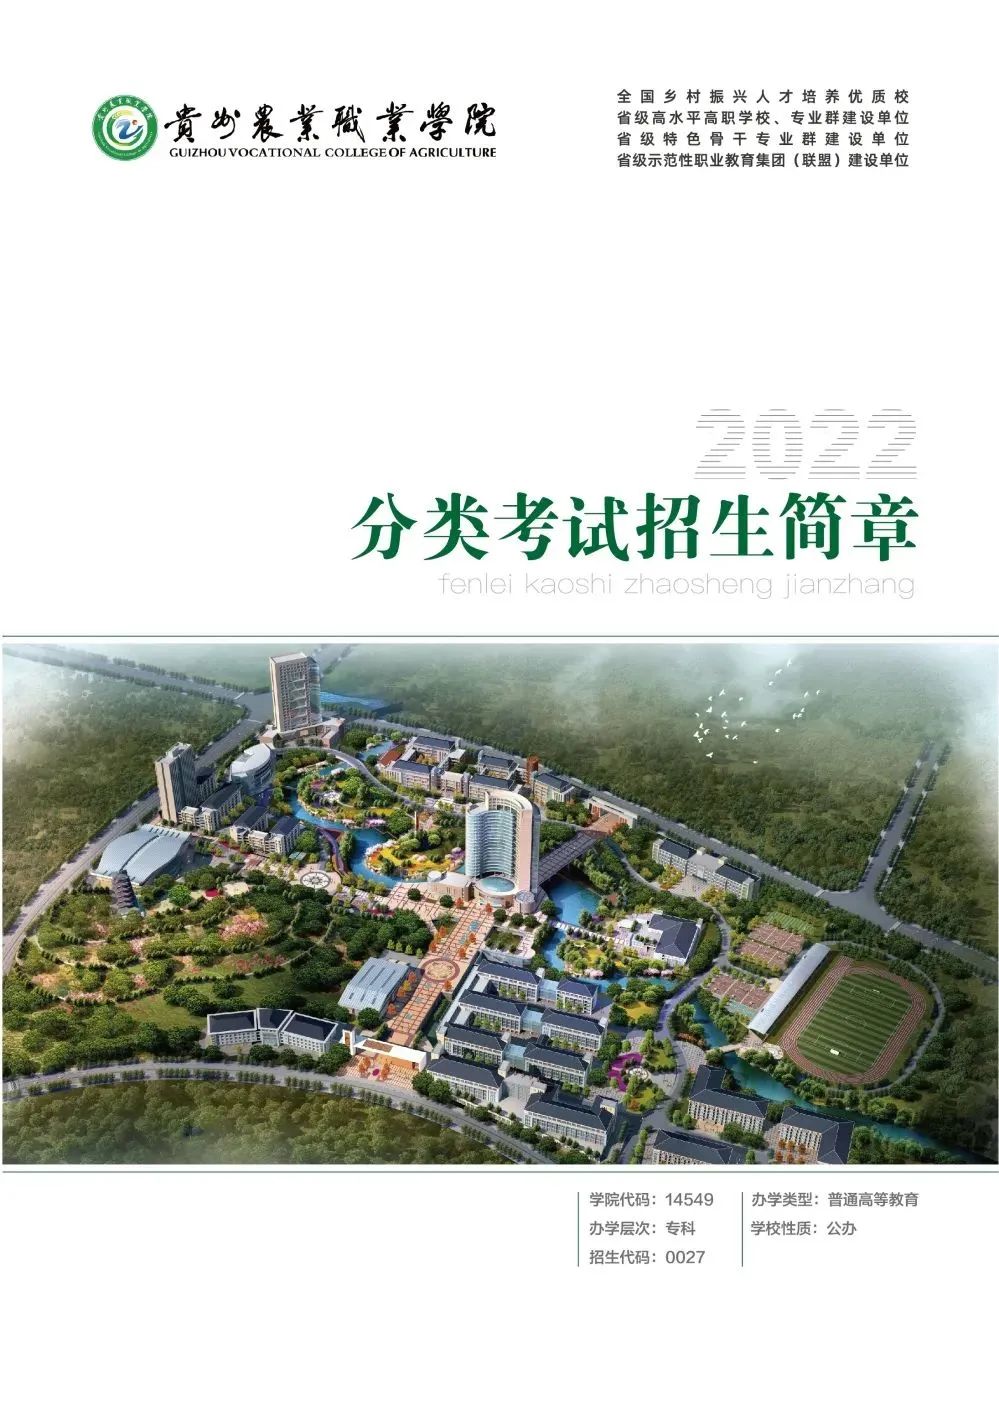 贵州农业职业学院地址图片